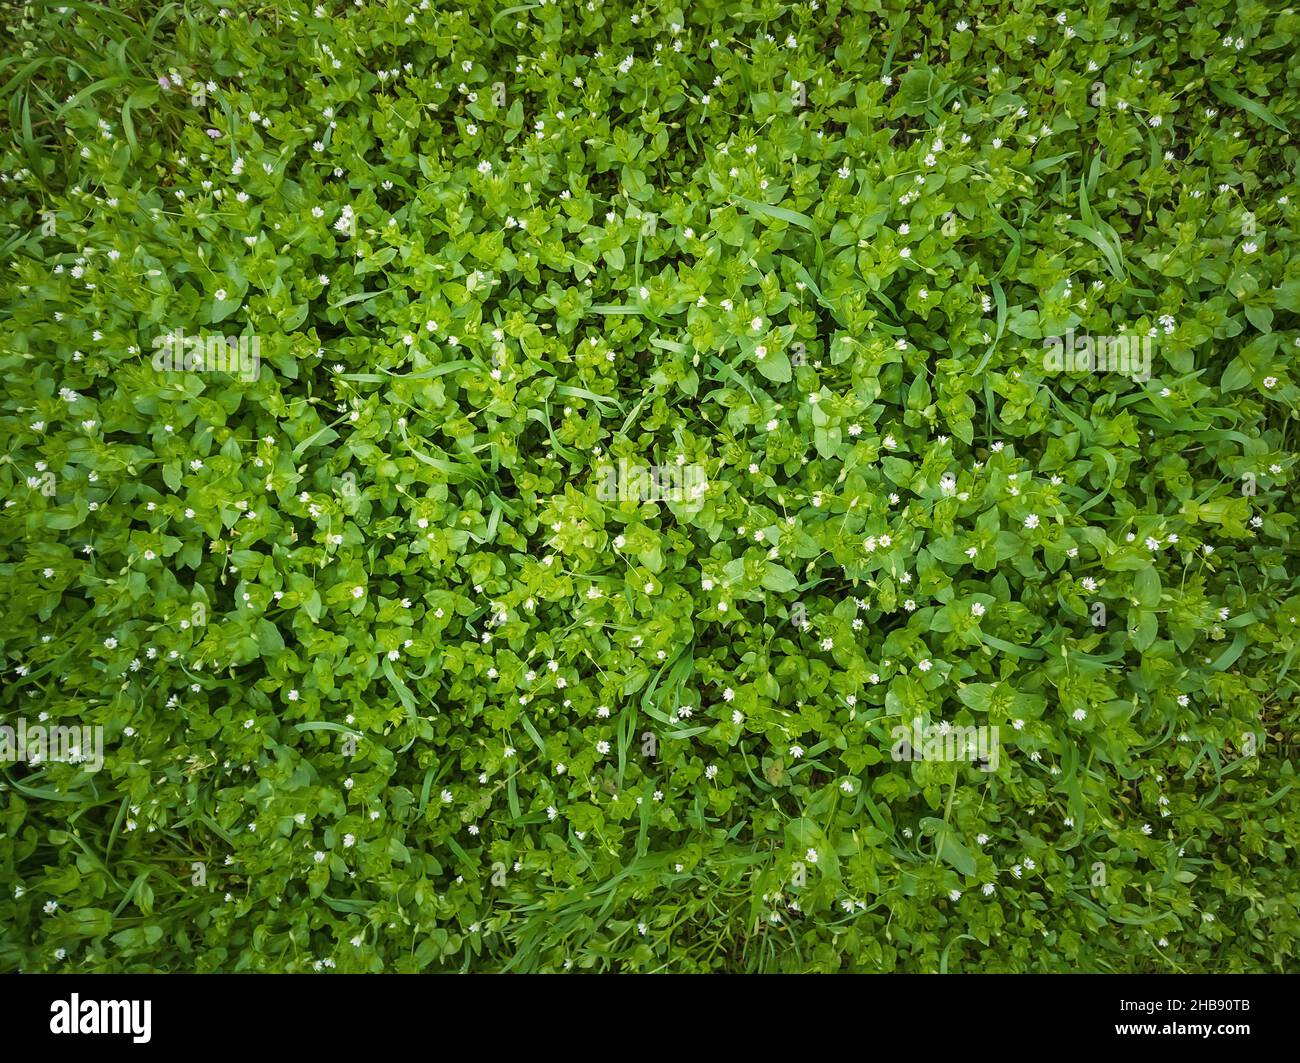 Nahaufnahme Wildgrün Gras Textur mit blühenden kleinen weißen Blüten. Grünende Pflanzen auf einer malerischen Sommerwiese. Verschiedene Kräuter und Vegetation, natu Stockfoto